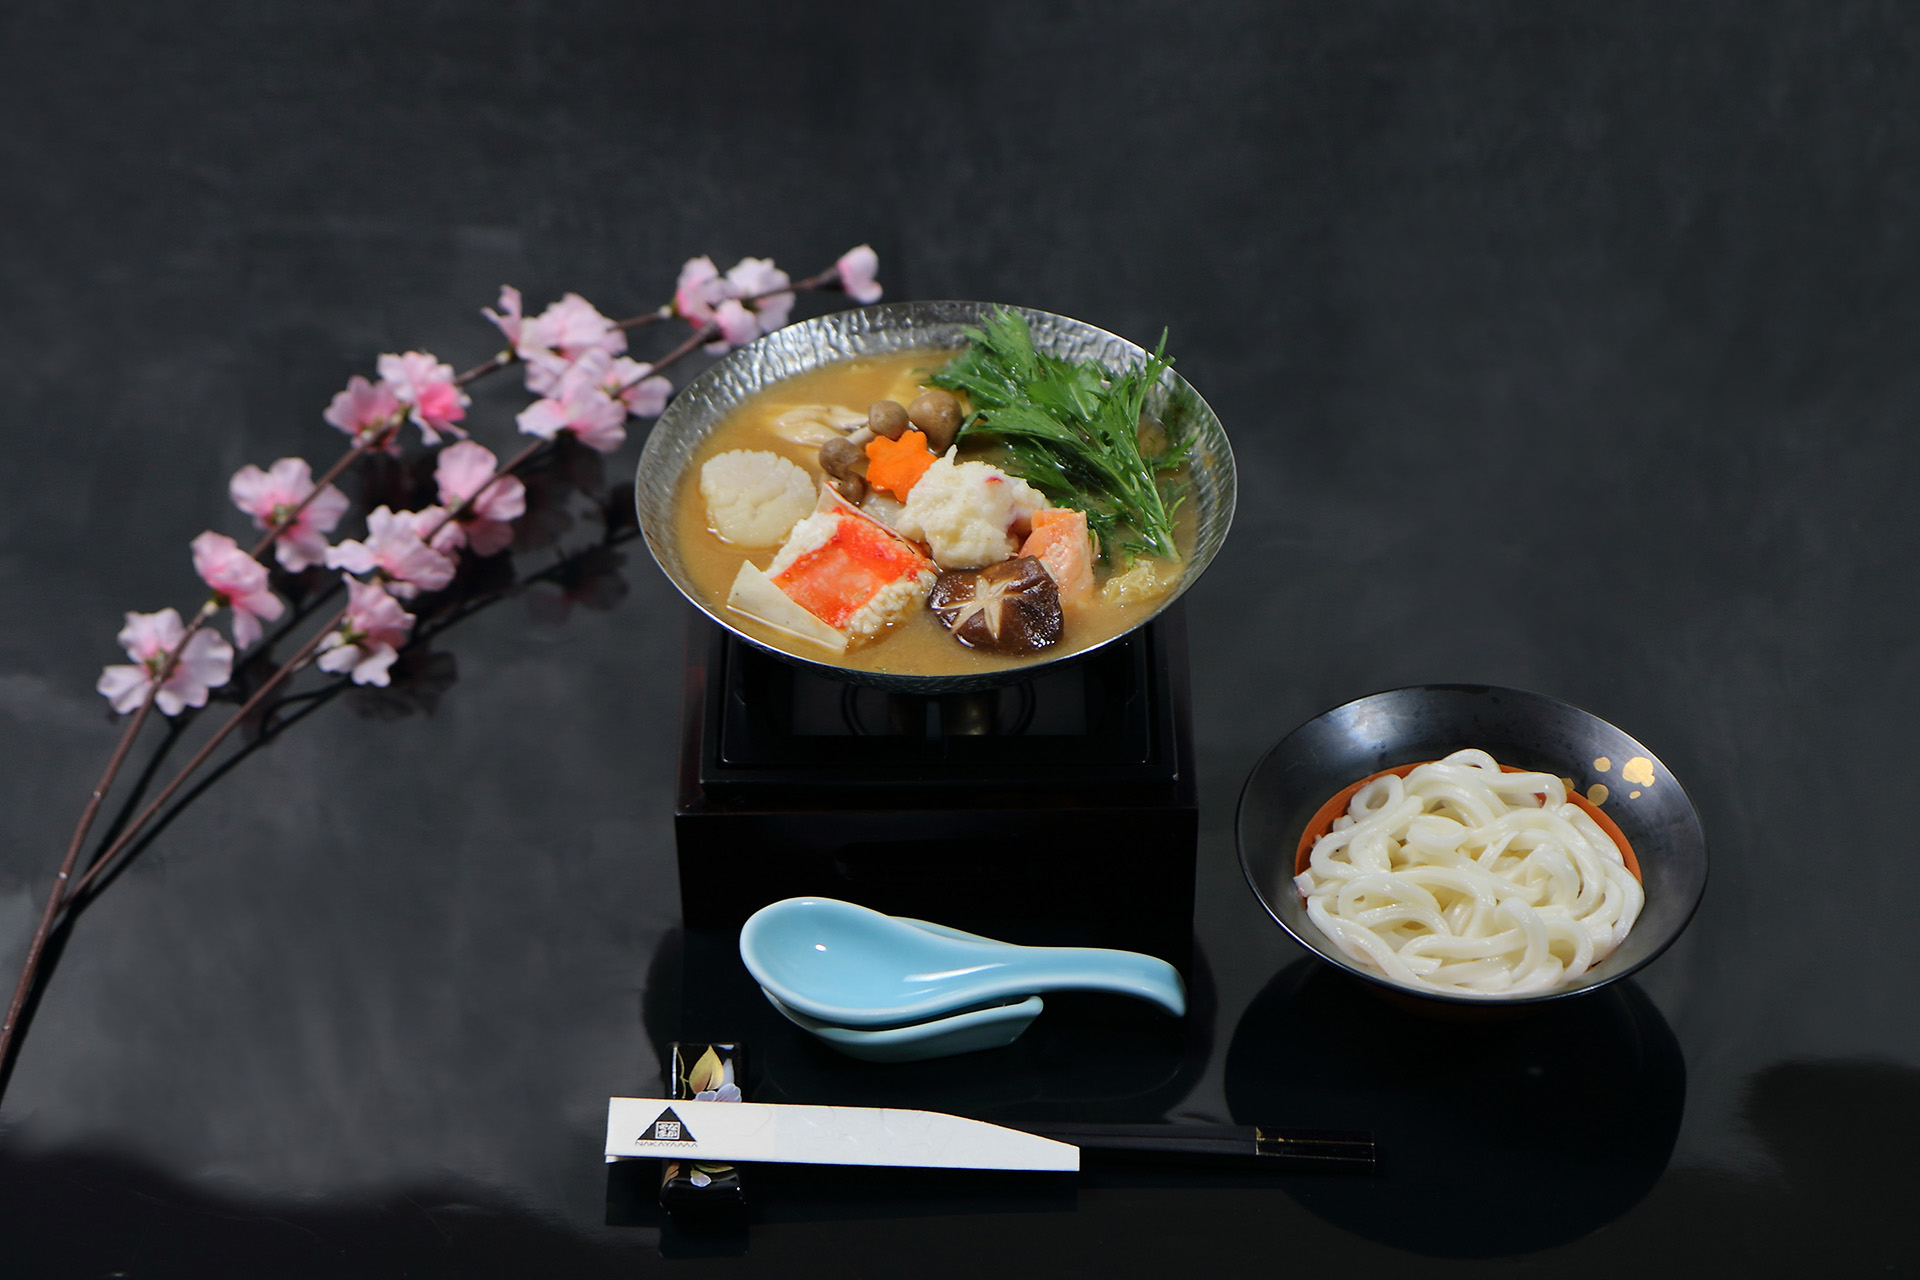 以單點方式供應的北海道海鮮鍋，選用多款新鮮海鮮煮出一鍋暖心口味